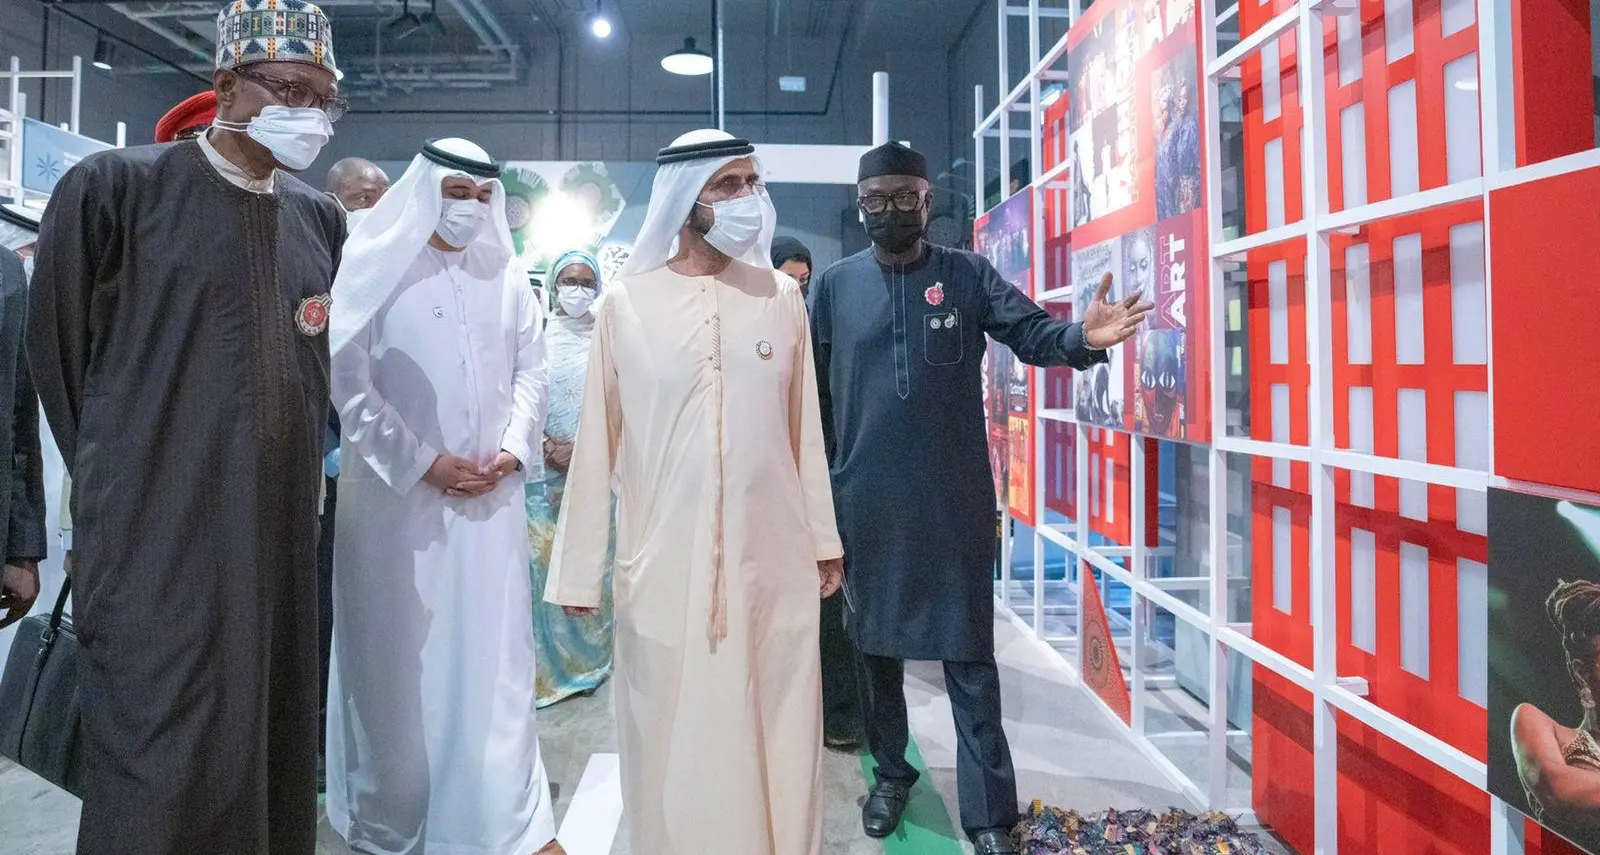 Mohammed bin Rashid meets with Presidents of Sri Lanka, Nigeria at Expo 2020